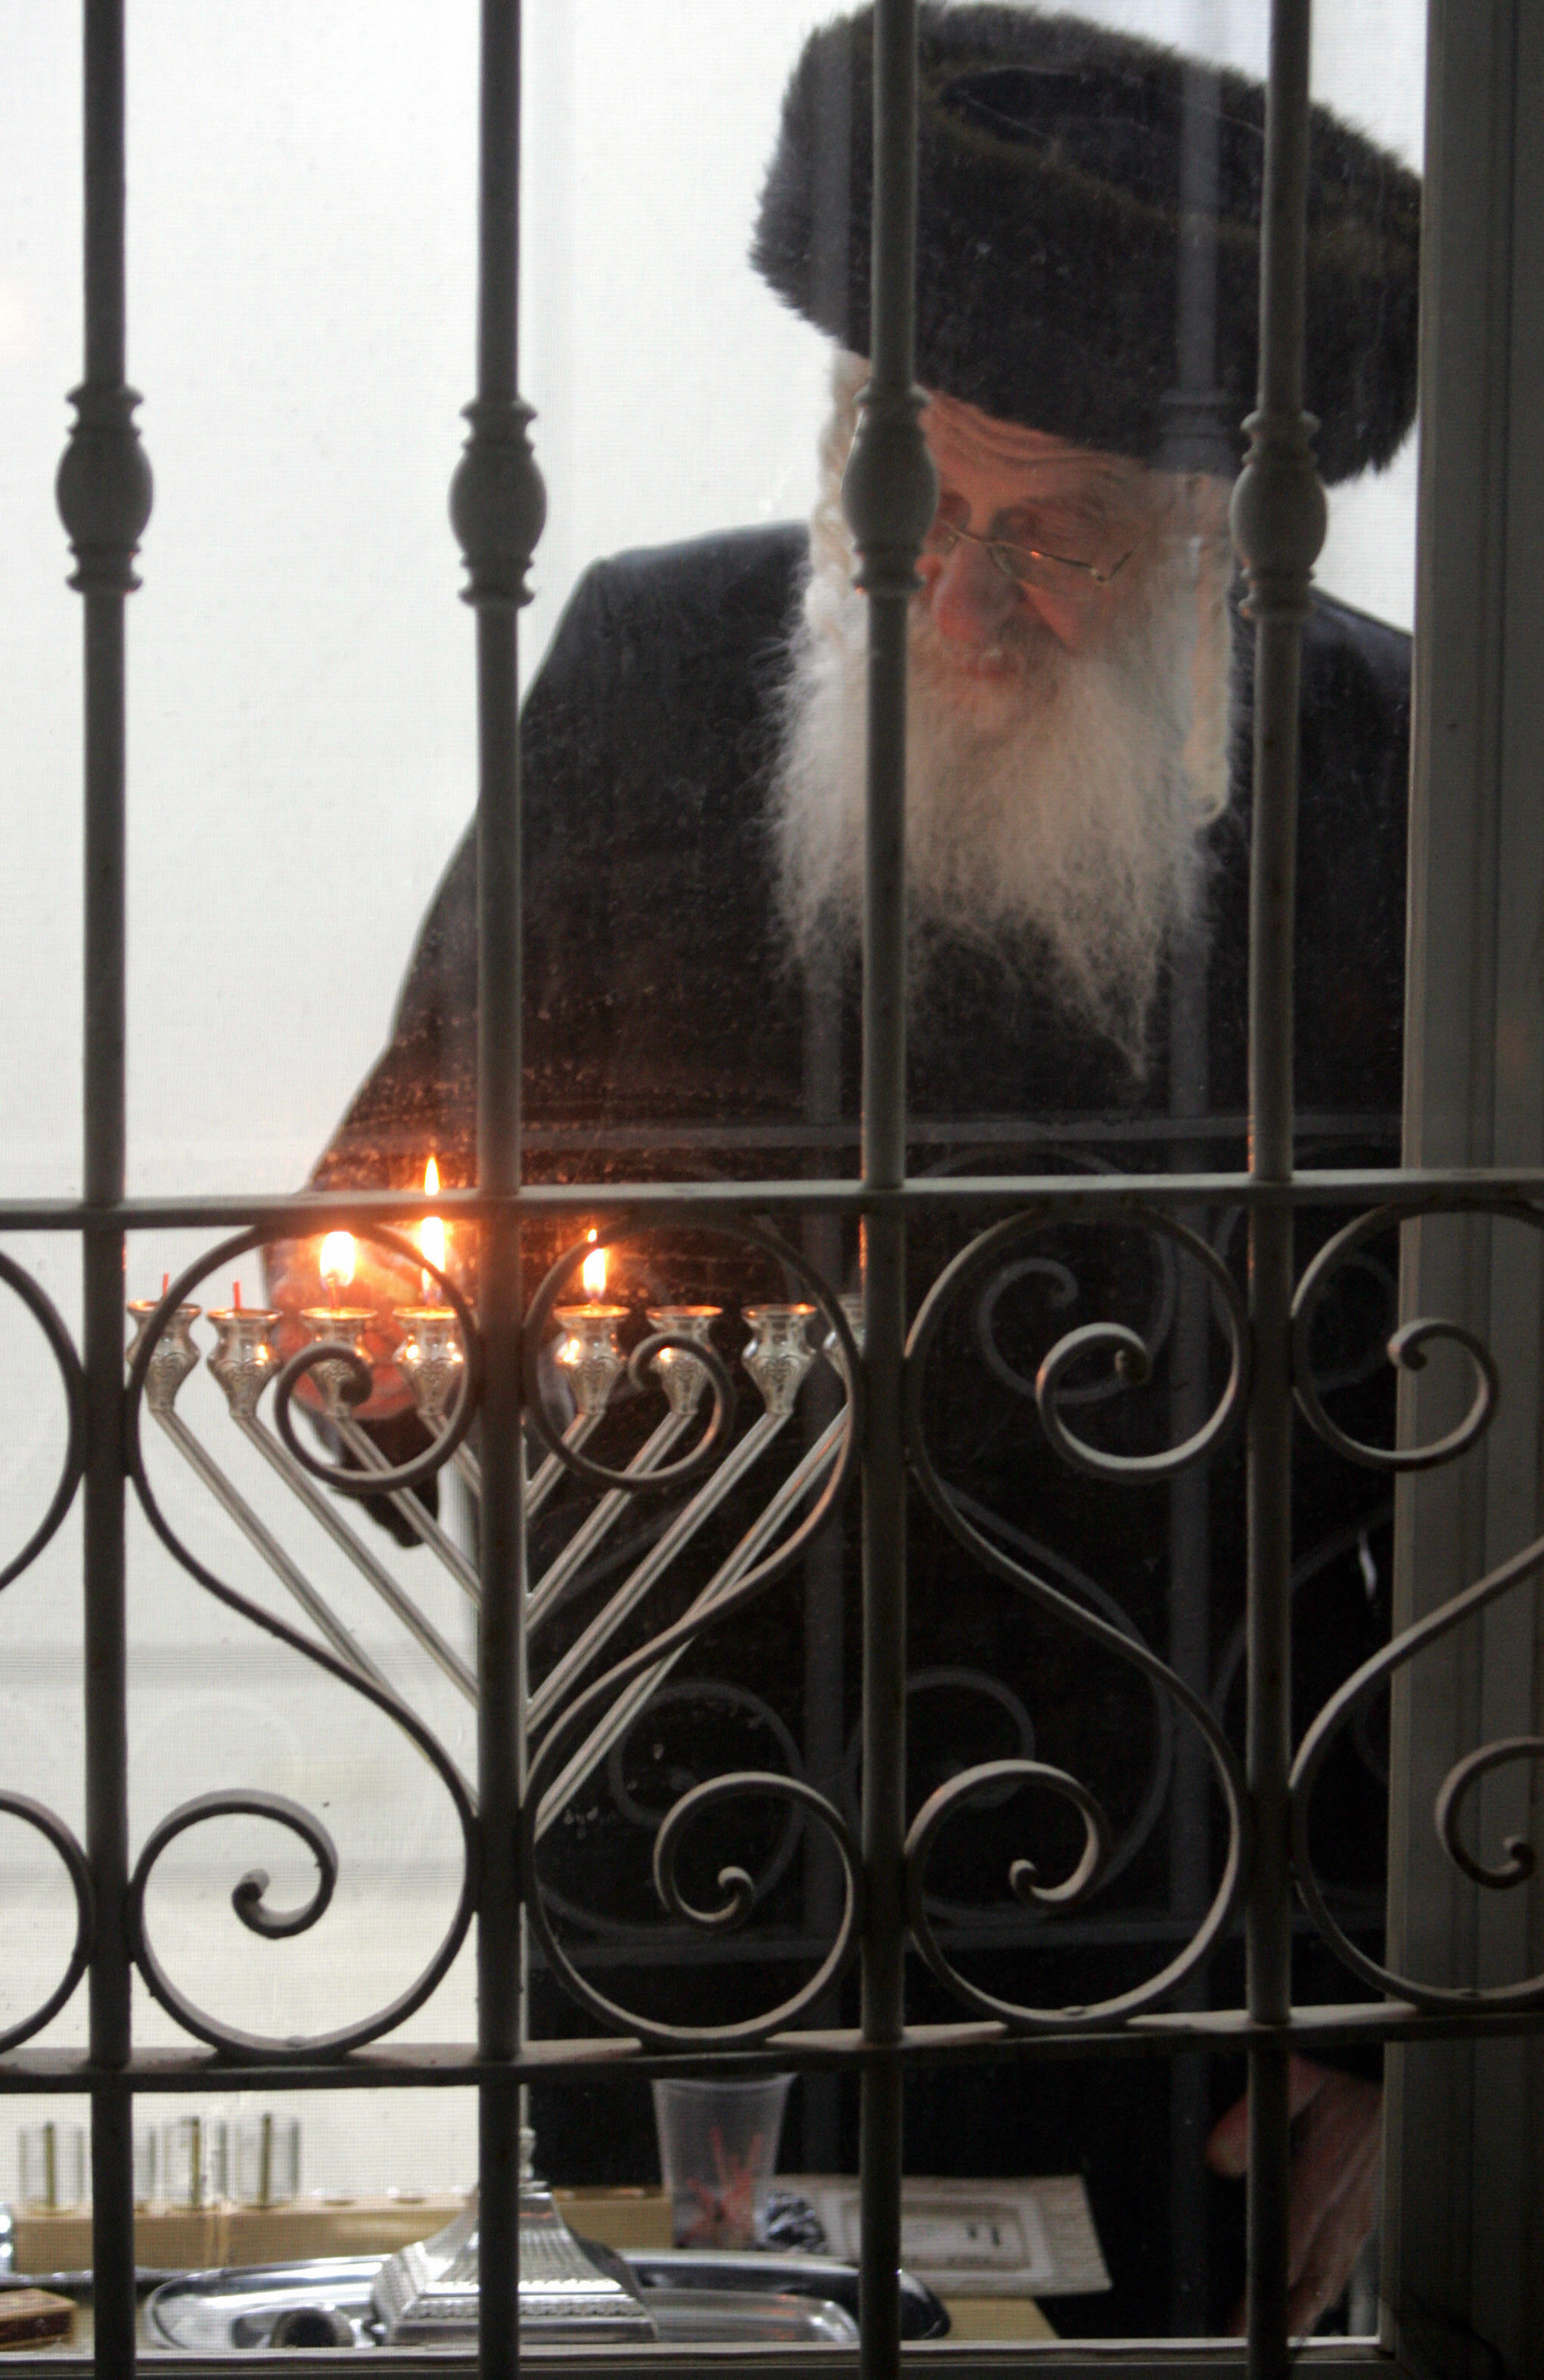 An Ultra-Orthodox Jewish man lights the